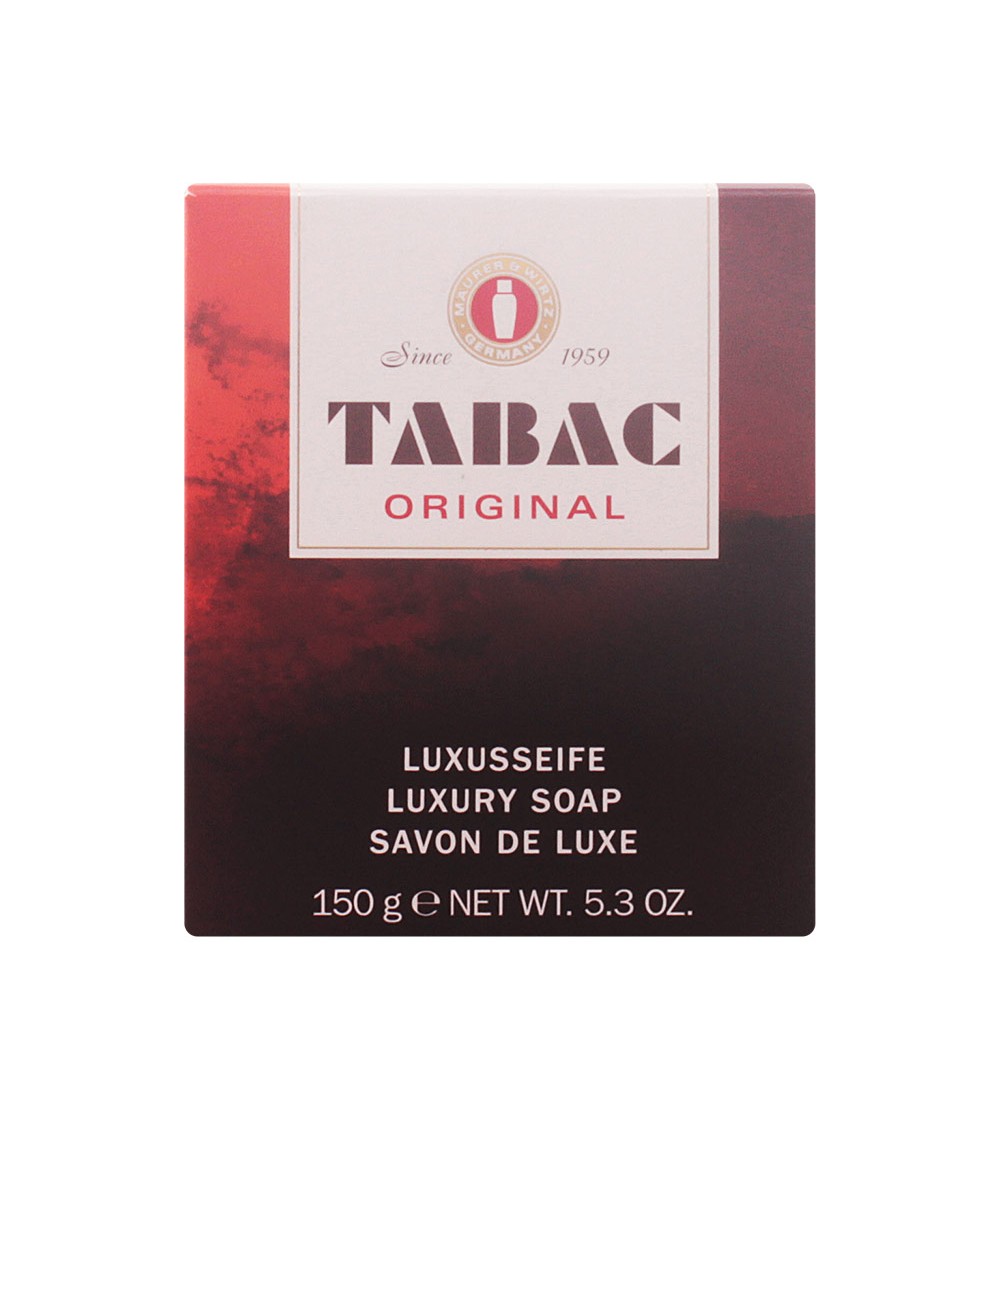 TABAC ORIGINAL luxury soap box gr